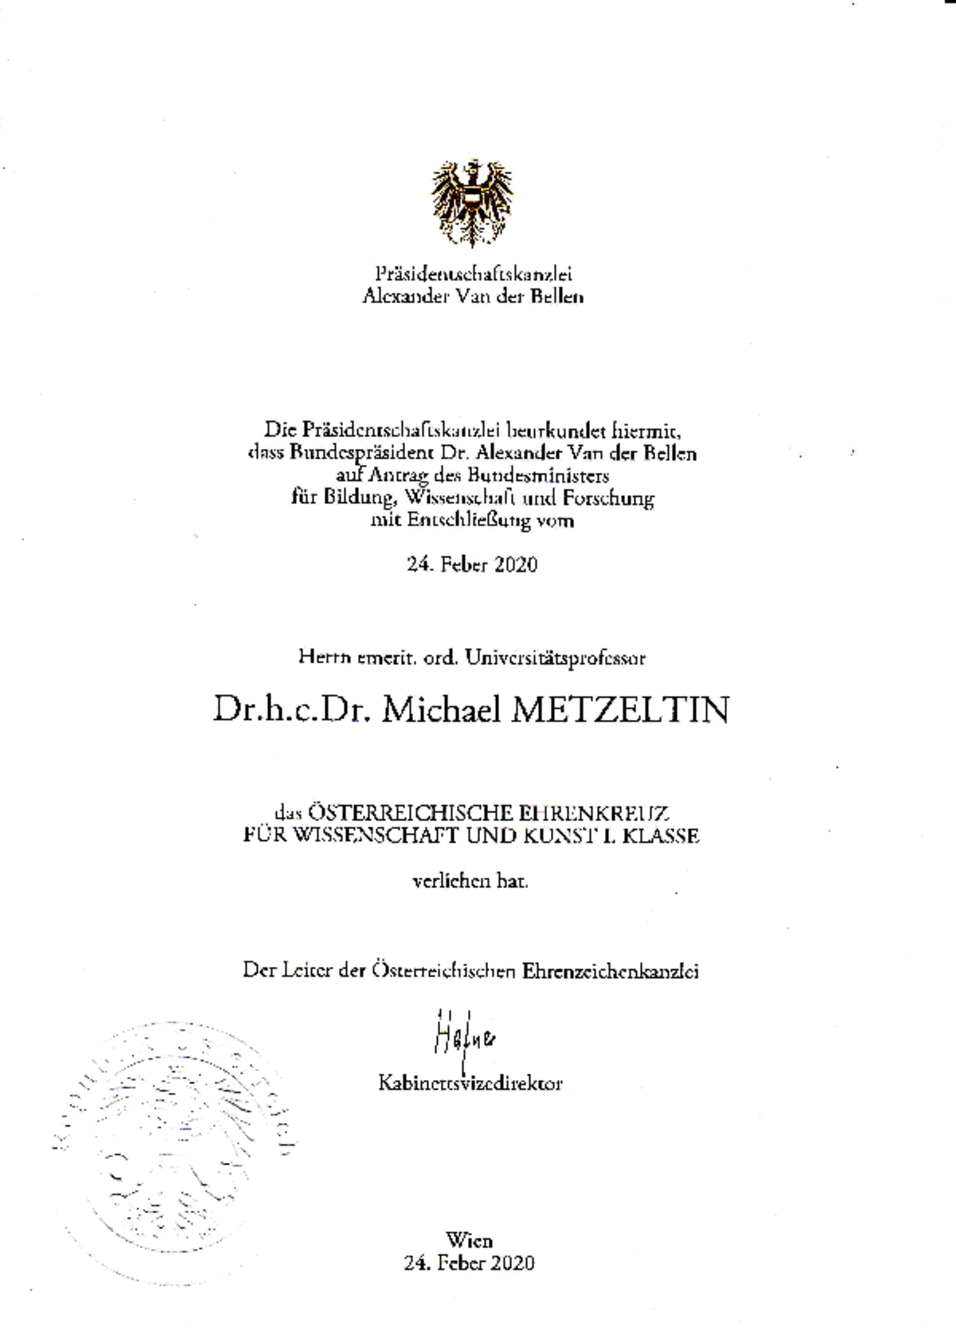 Dekret für Michael Metzeltin zum Erhalt des Österreichisches Ehrenkreuz für Wissenschaft und Kunst I. Klasse